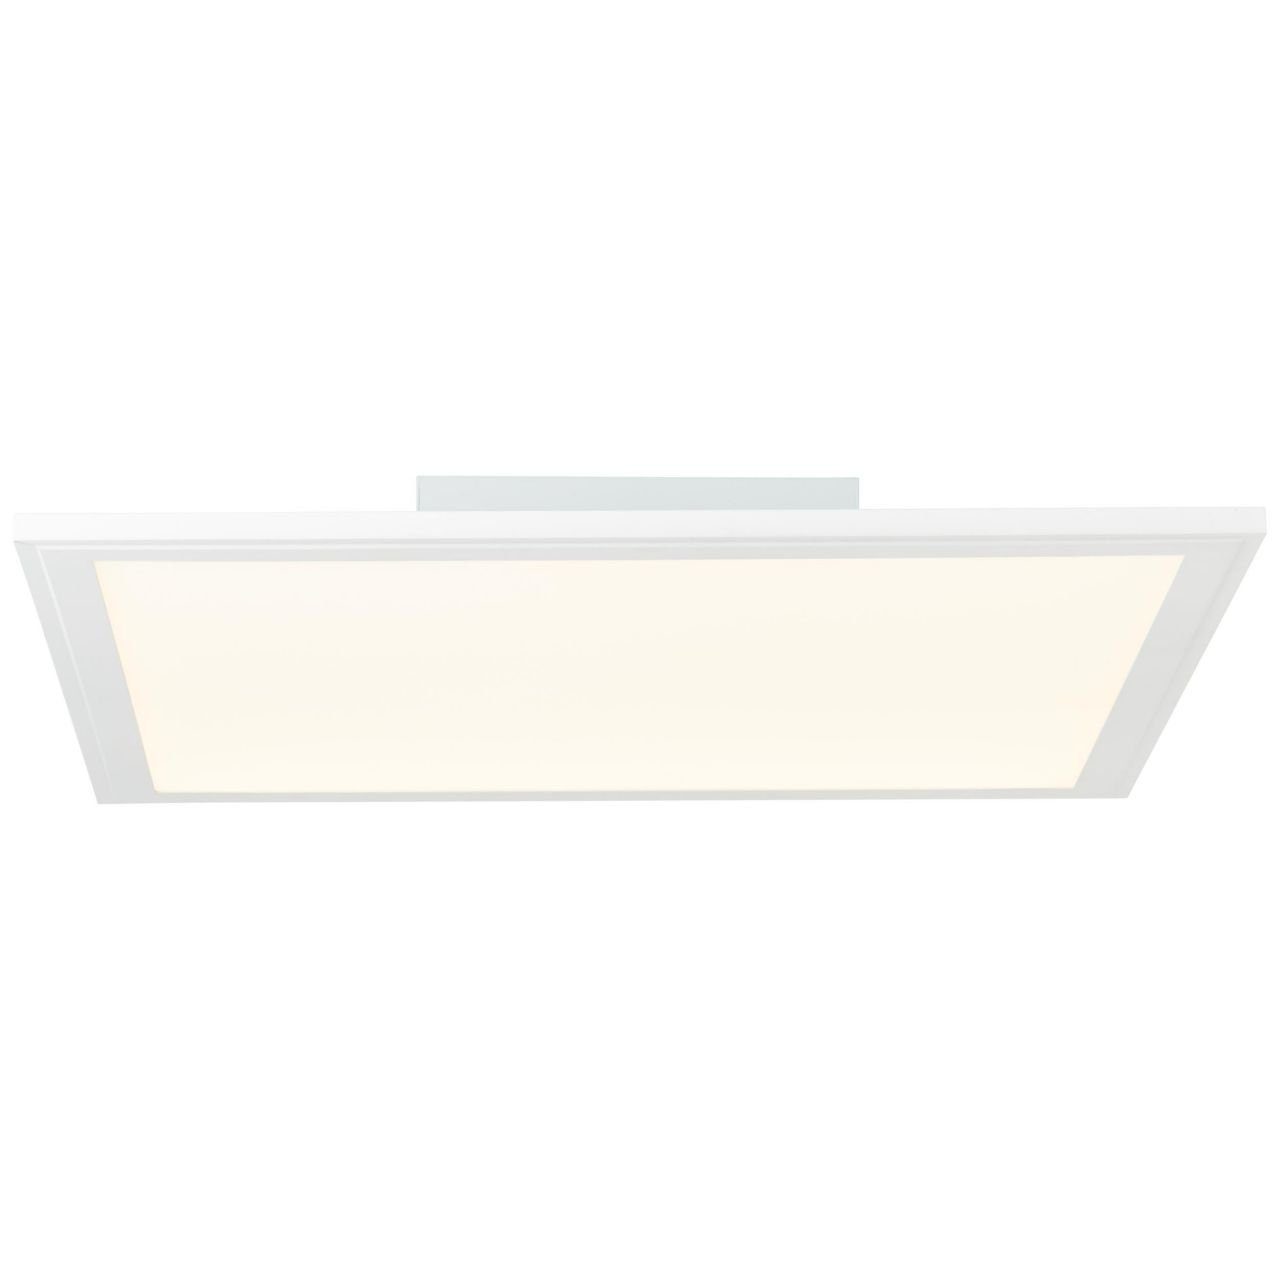 Brilliant Deckenleuchte Abie, RGB Abie Lampe LED Deckenaufbau-Paneel 1x integ weiß LED 2700-6200K, 24W 40x40cm